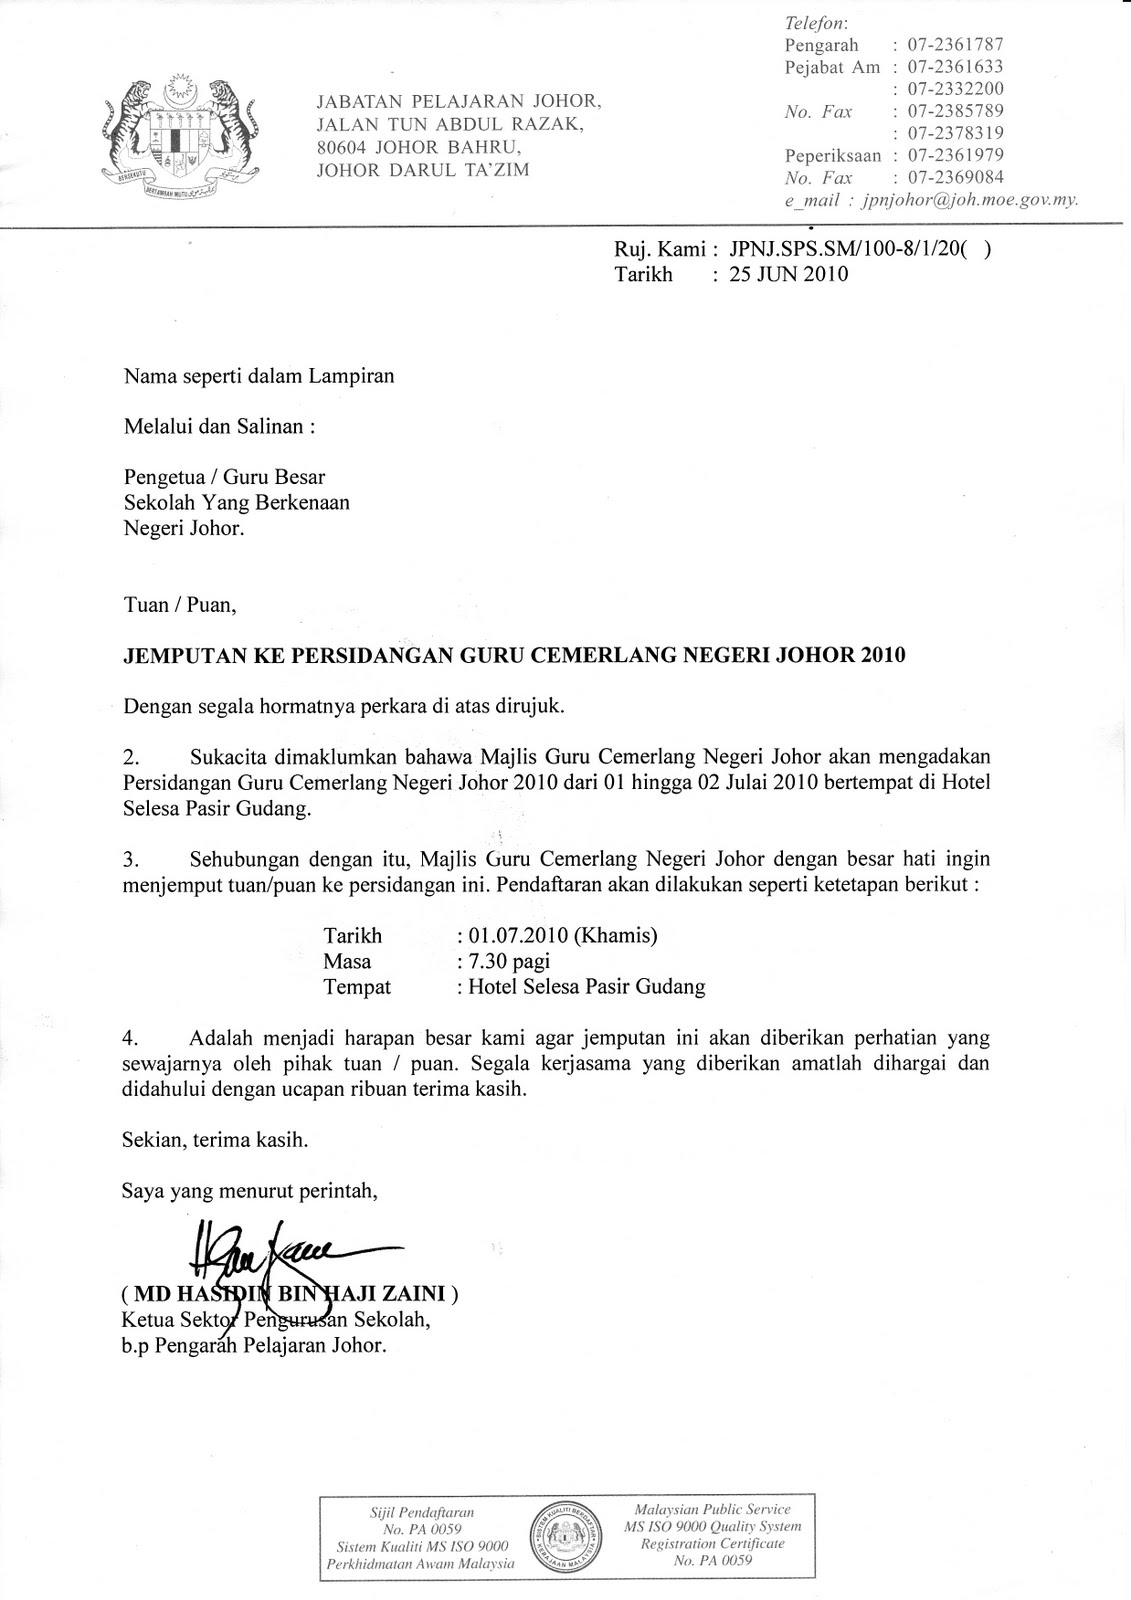 Contoh Surat Rasmi Kepada Sultan Brunei - Rasmi W